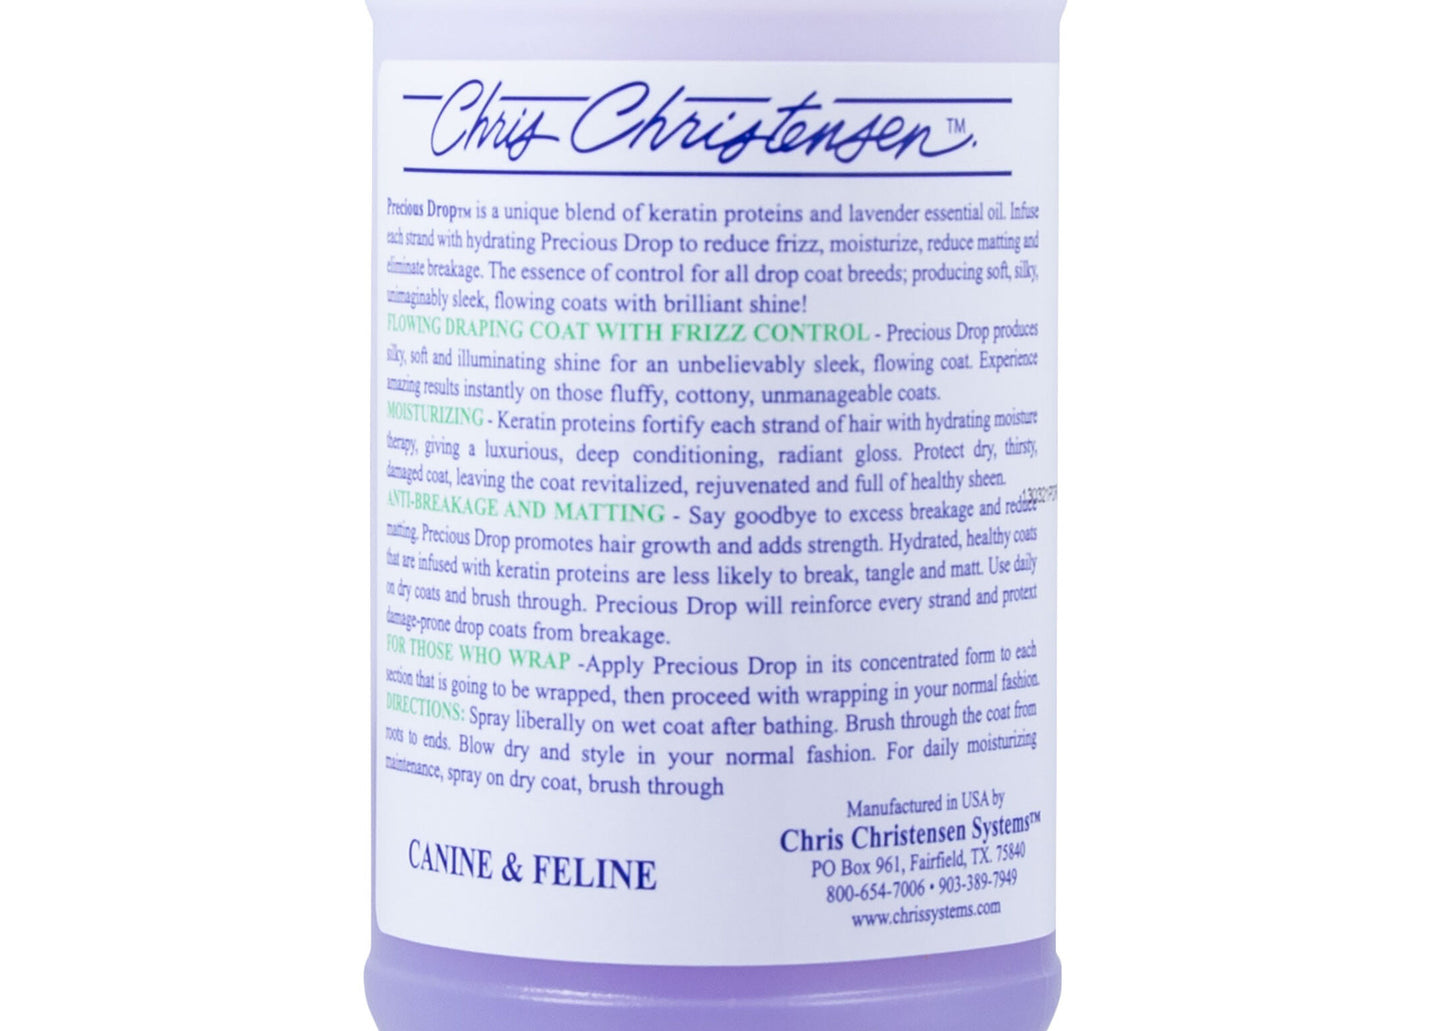 Chris Christensen Precious Drop Spray, Coat Controll, reduziert Verfilzungen, vermeidet Haarbruch